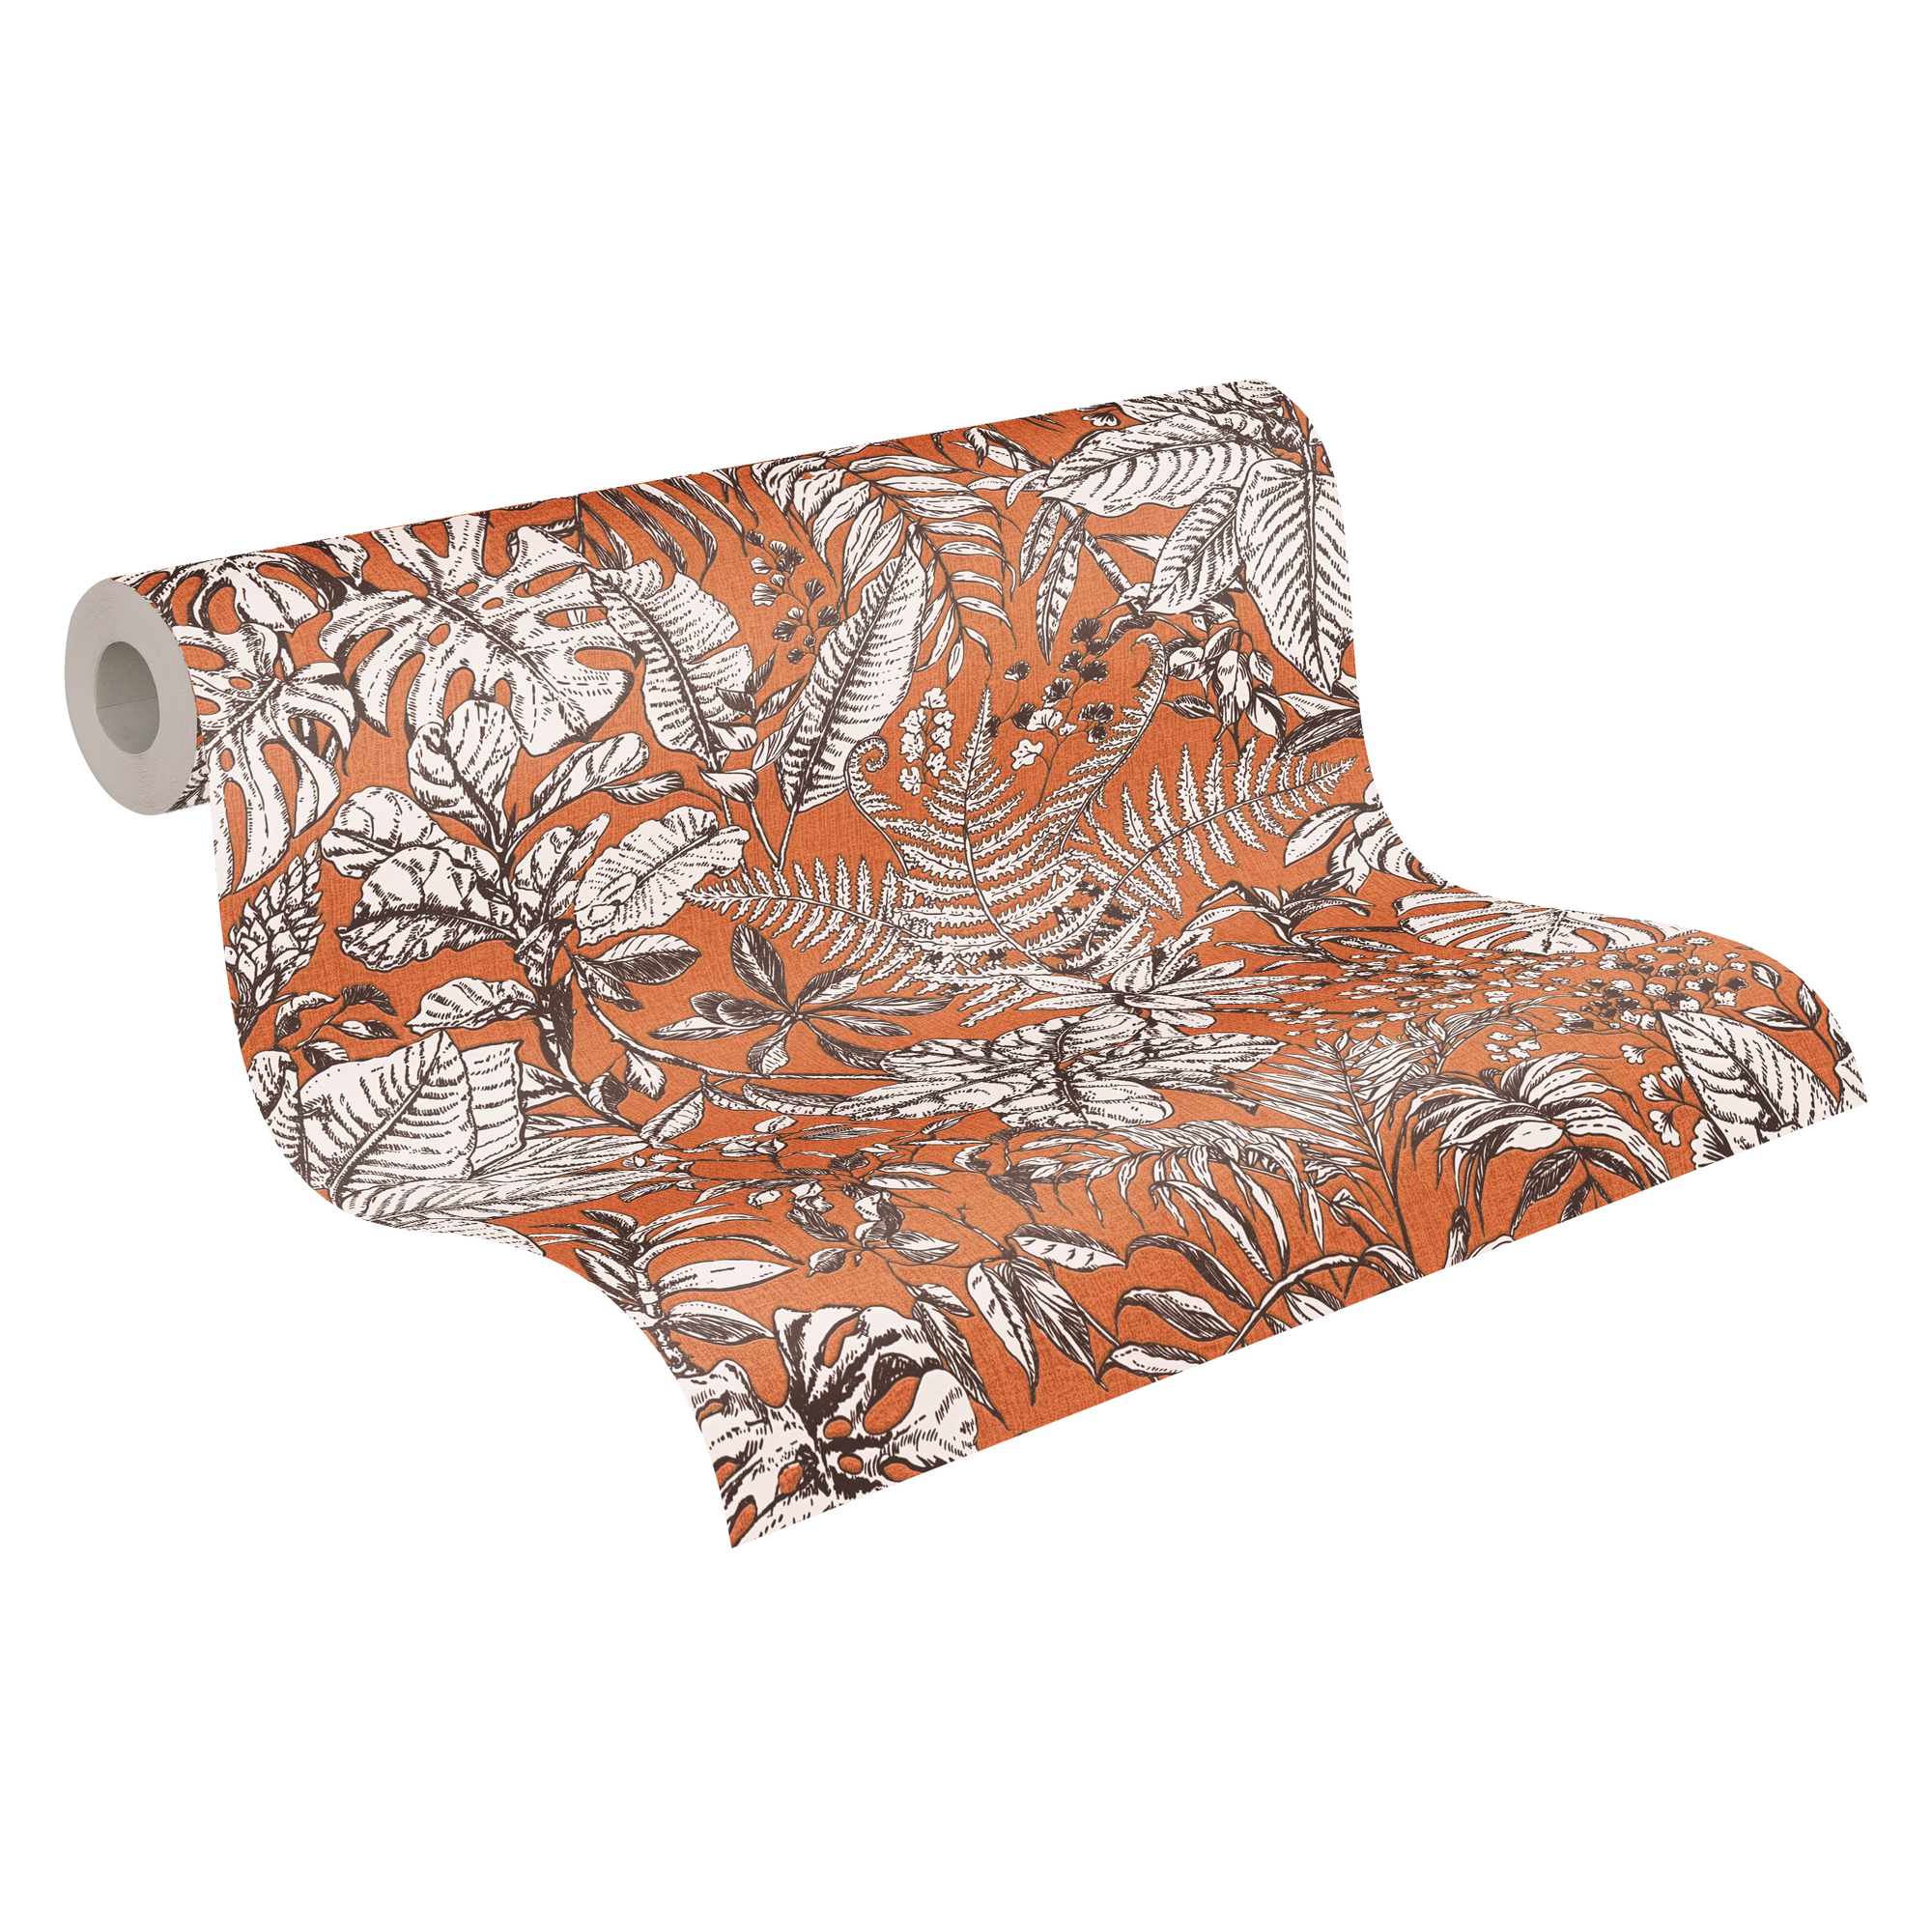 Vliestapete 'Daniel Hechter 6' Dschungel orange/weiß 53 x 1005 cm + product picture